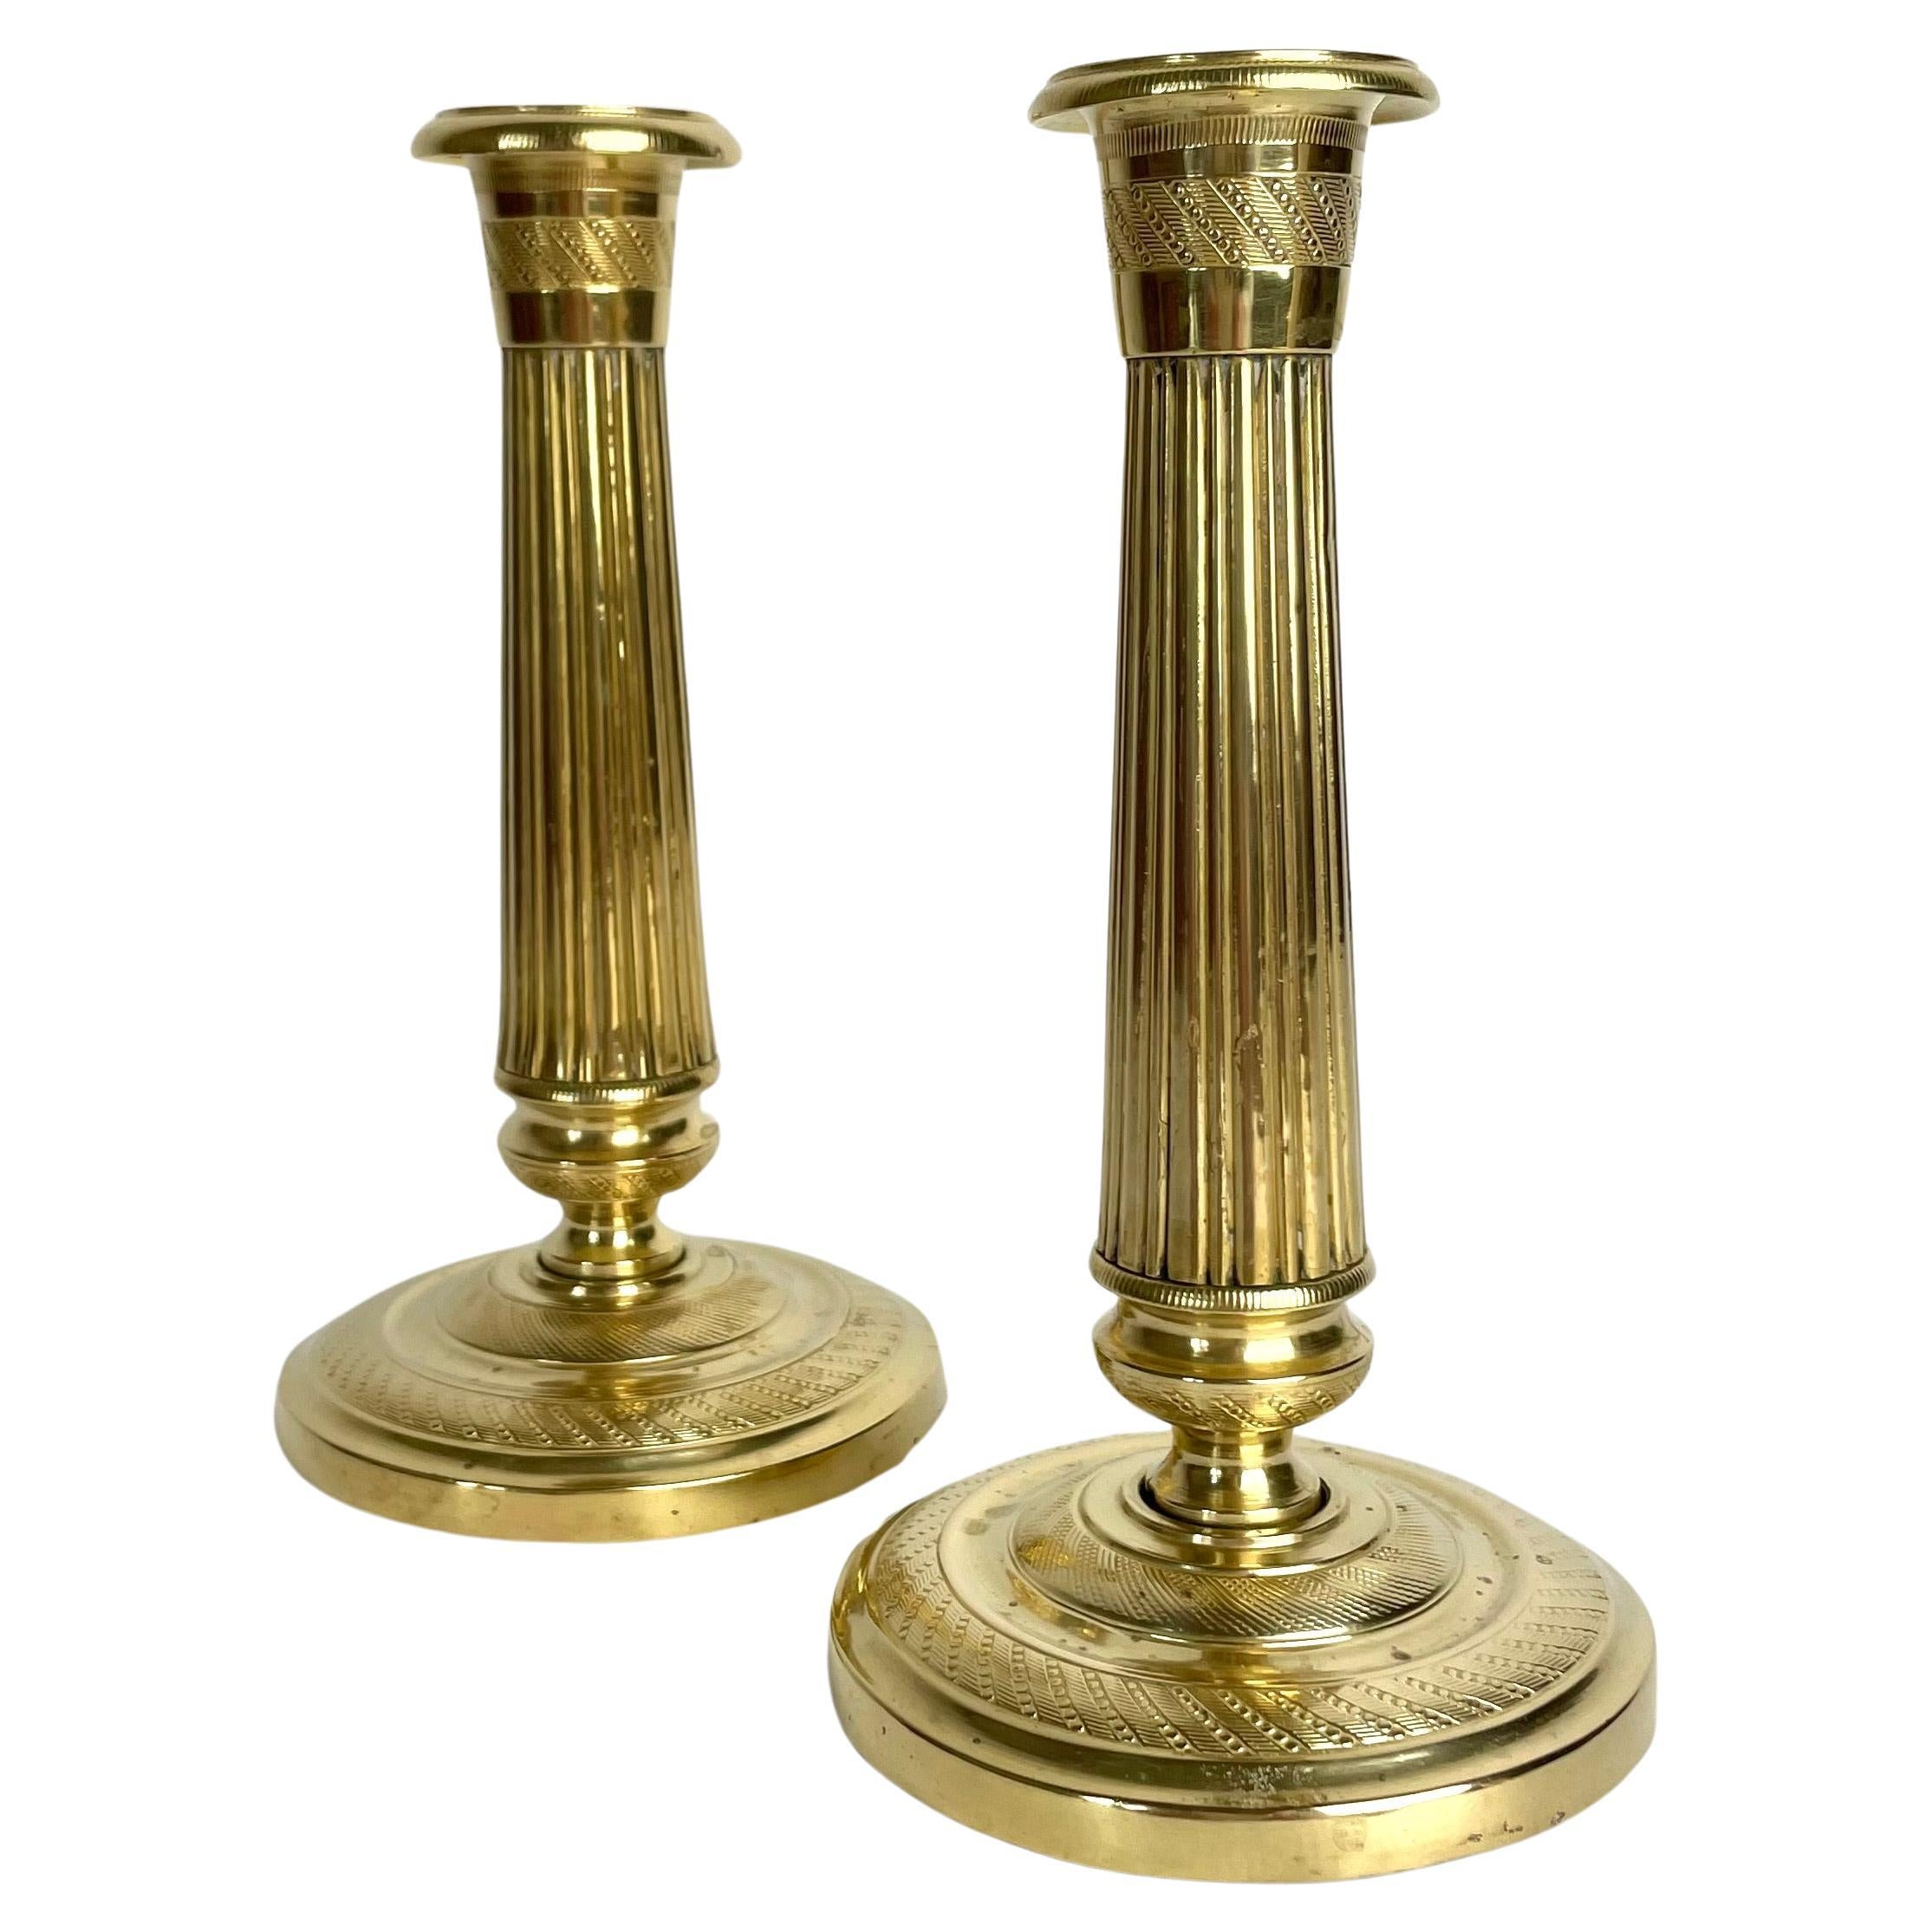 Belle paire de petits chandeliers Empire en bronze doré des années 1820